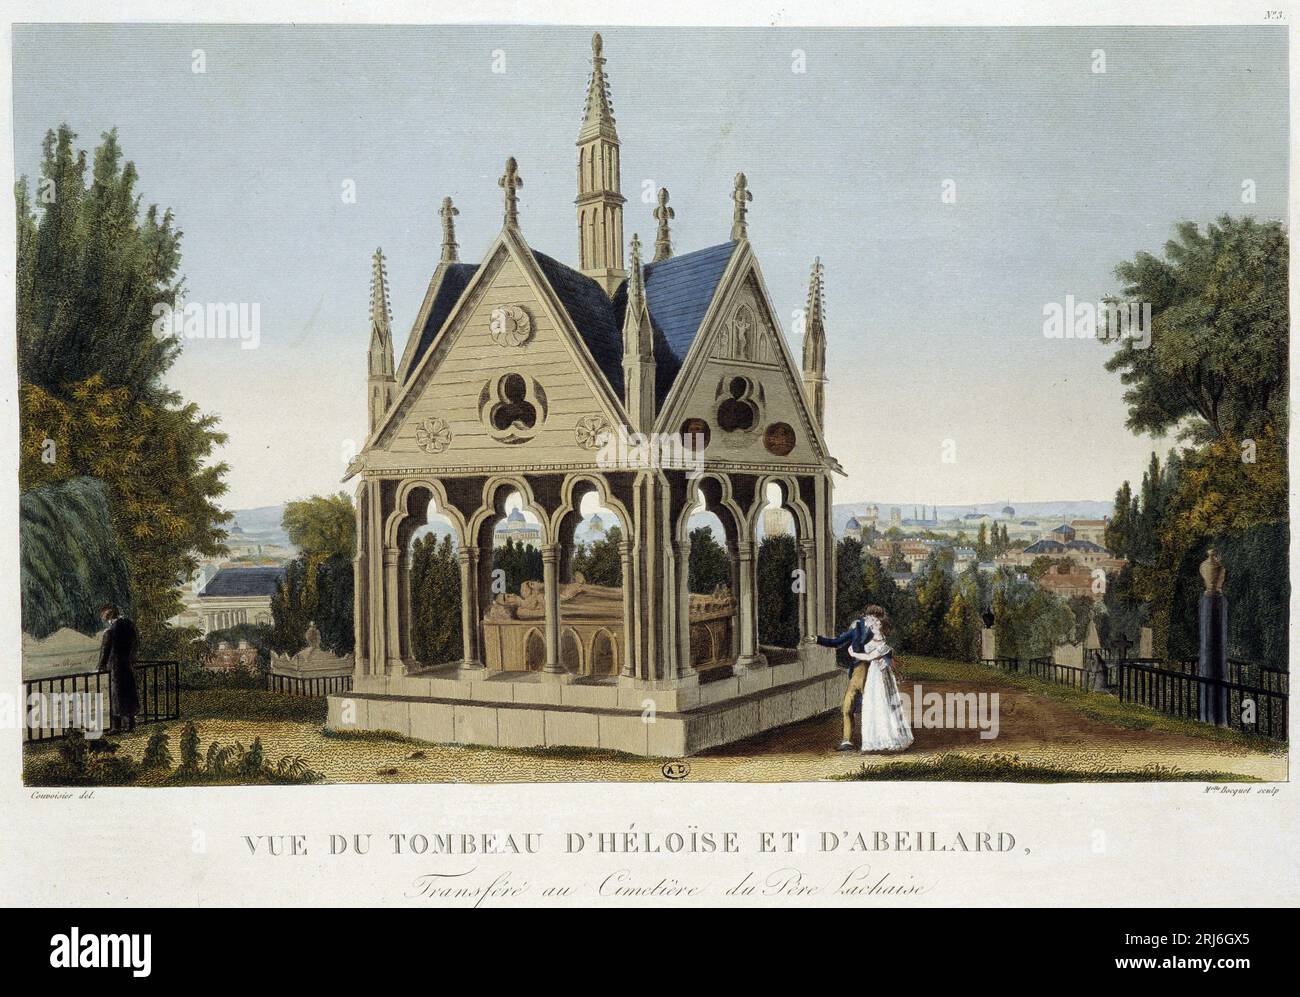 Tombeau d'Heloïse et Abelard au Père Lachaise, vers 1820 - in 'vues de Paris' de Courvoisier, 1827 Banque D'Images